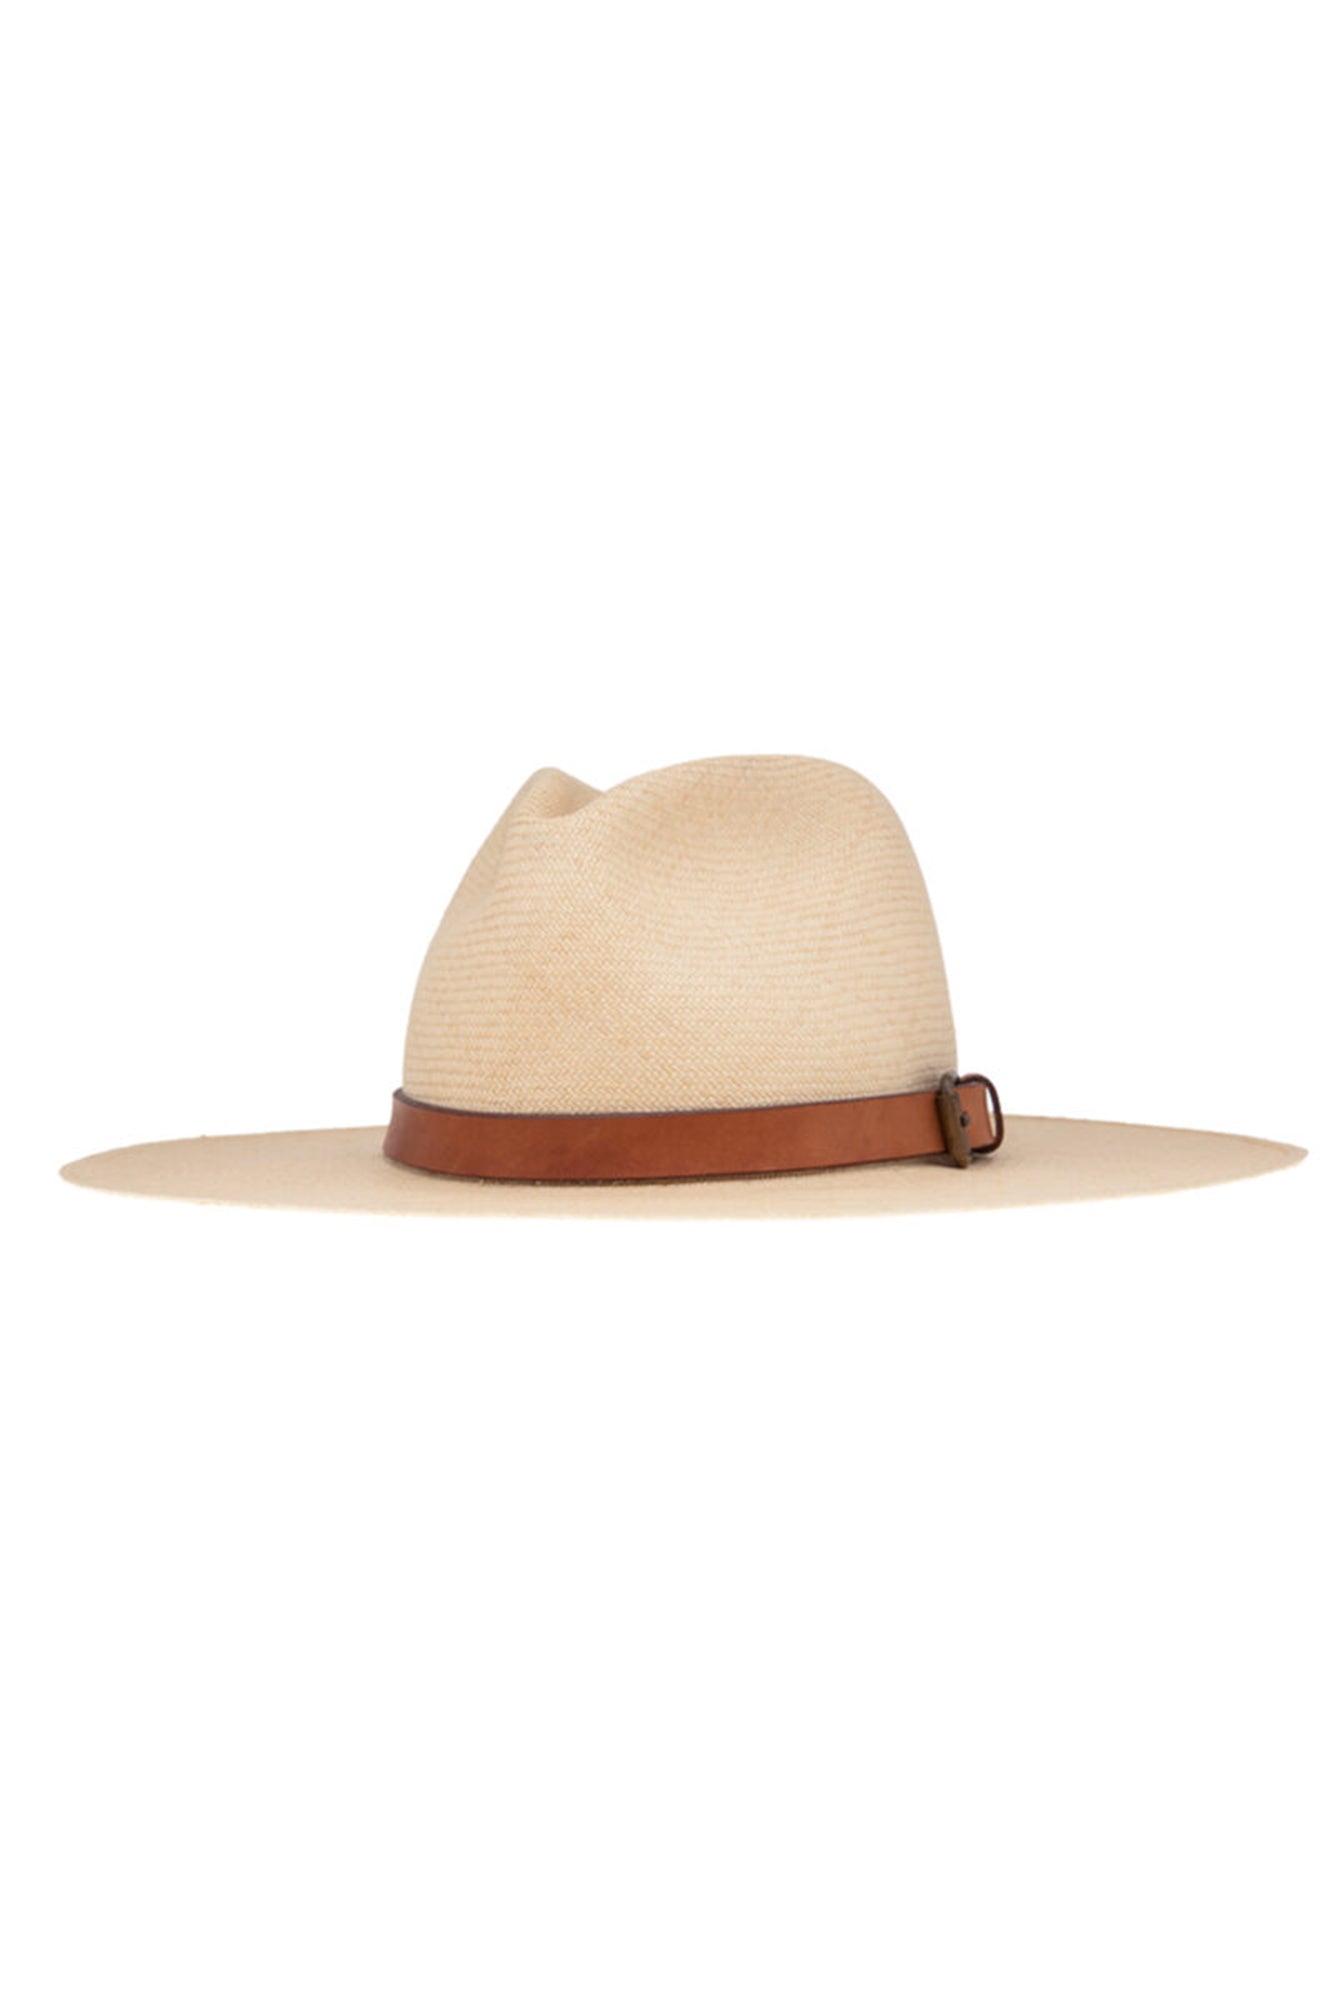 Coda Long Brim Panama Hat Tan